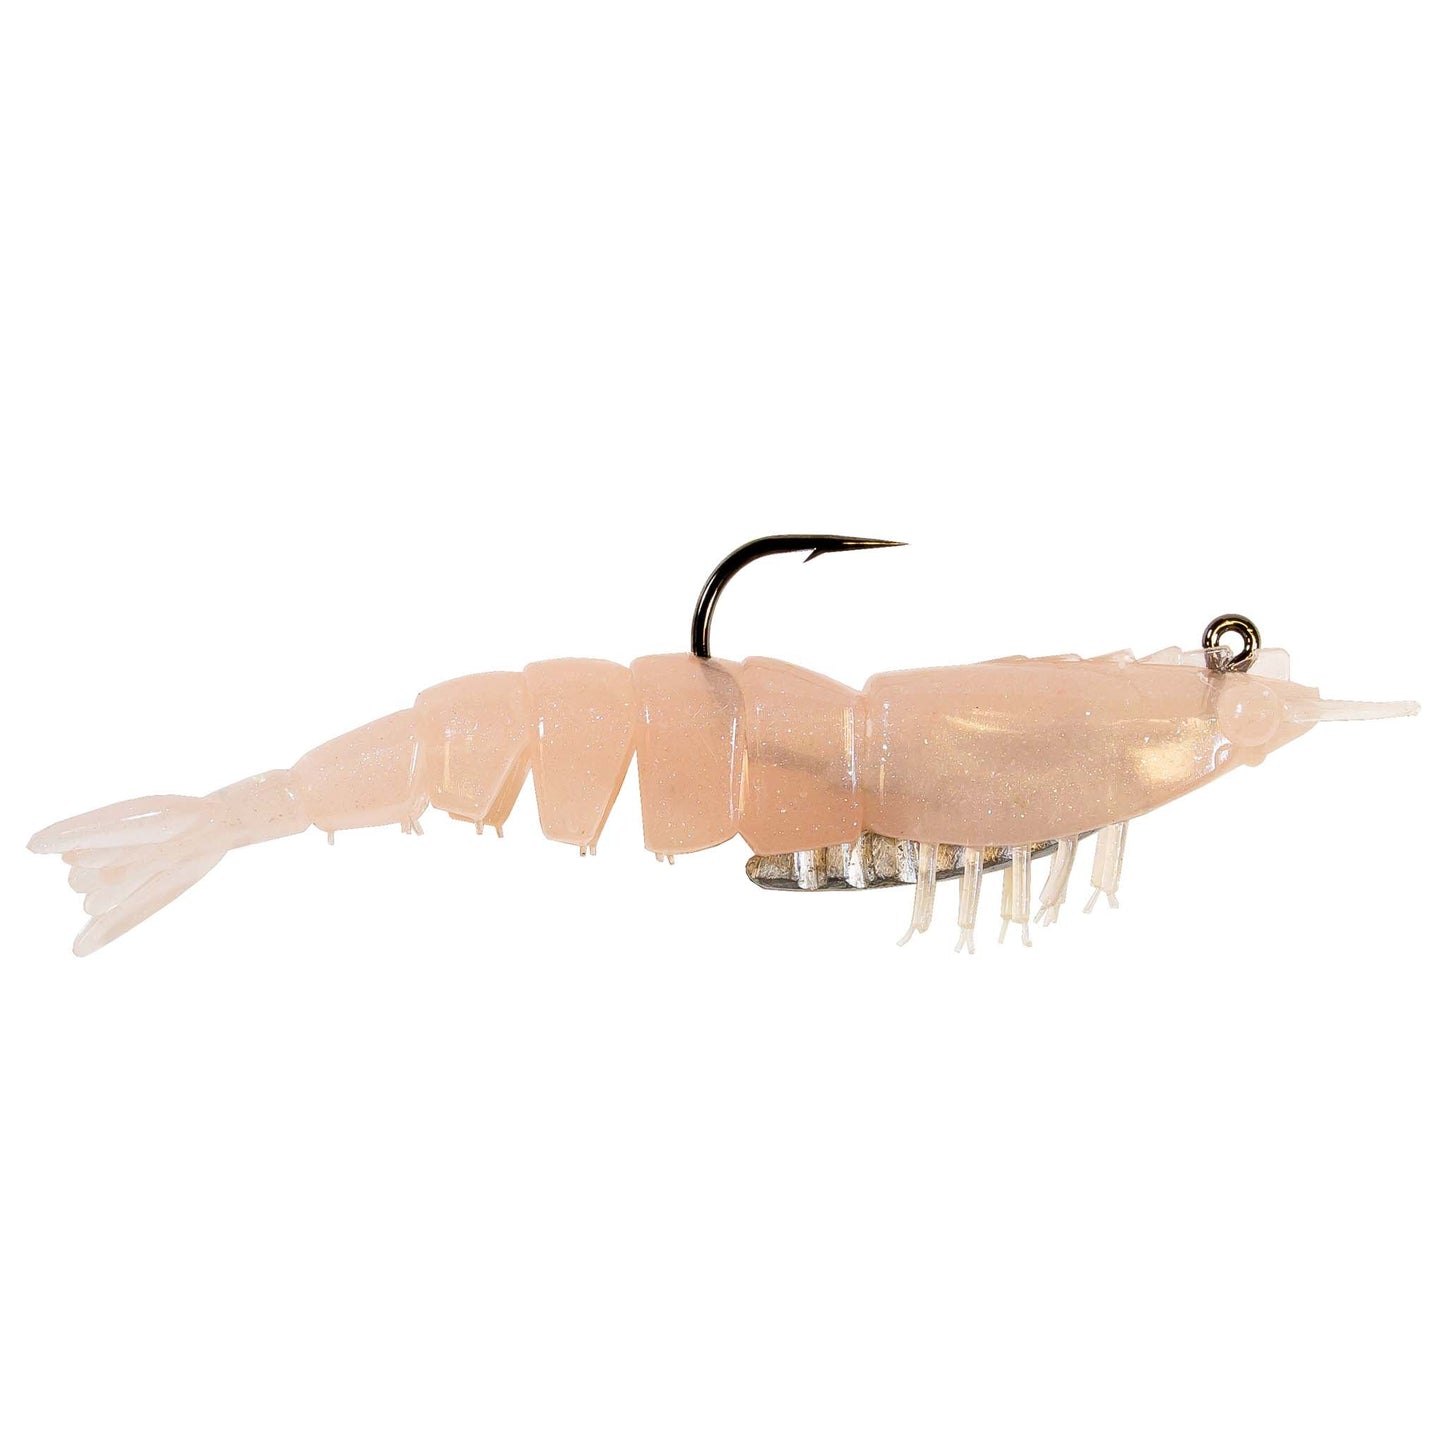 Z-Man EZ Shrimp - Dogfish Tackle & Marine